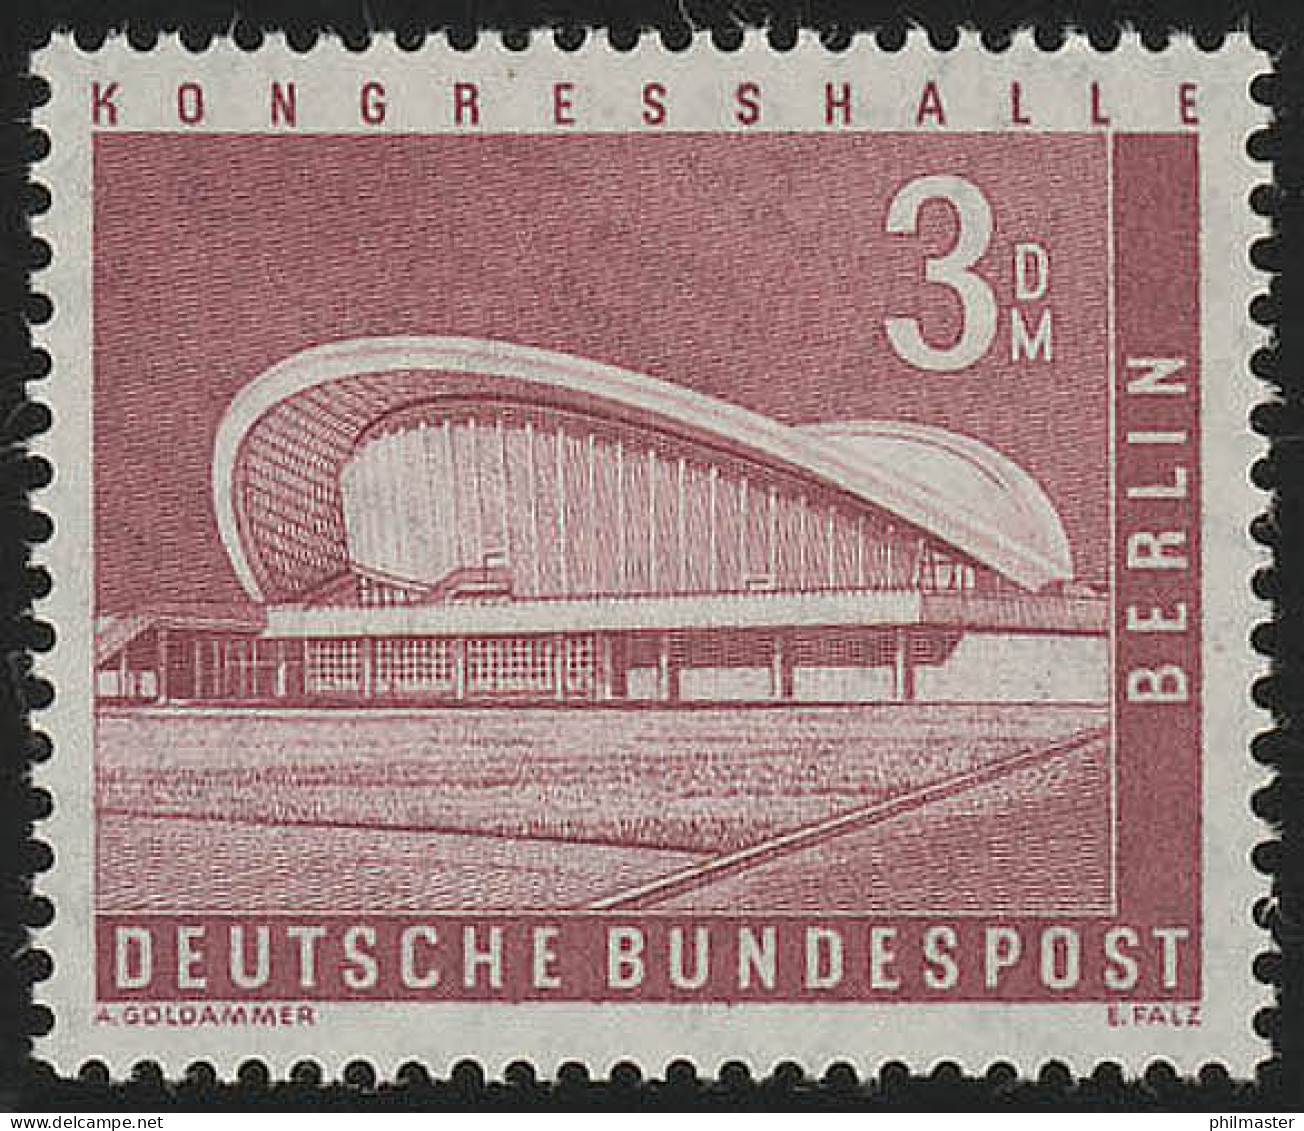 154w Glatt Stadtbilder Kongresshalle 3 DM ** Postfrisch - Unused Stamps